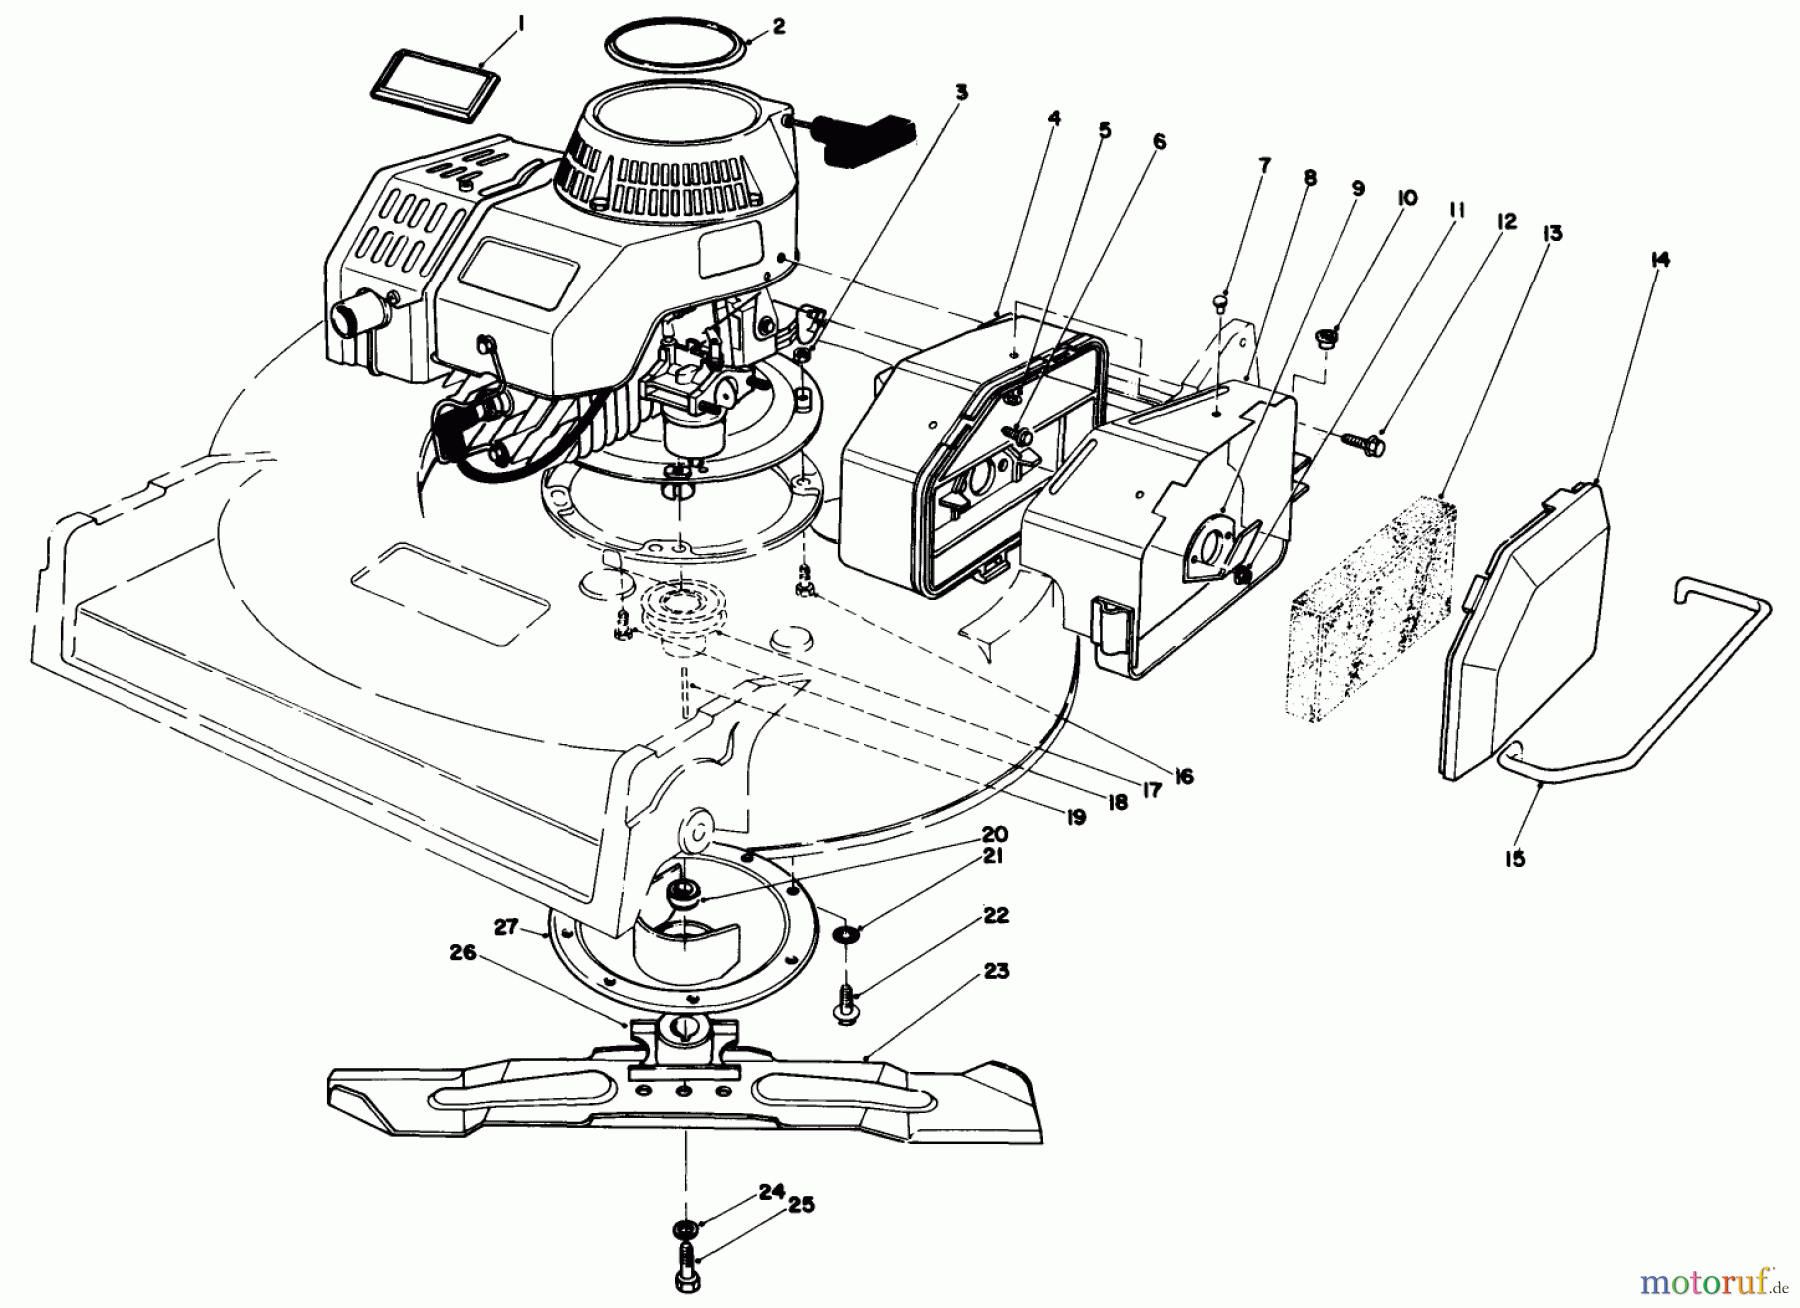  Toro Neu Mowers, Walk-Behind Seite 2 22030 - Toro Lawnmower, 1988 (8000001-8999999) ENGINE ASSEMBLY (MODEL 22035)